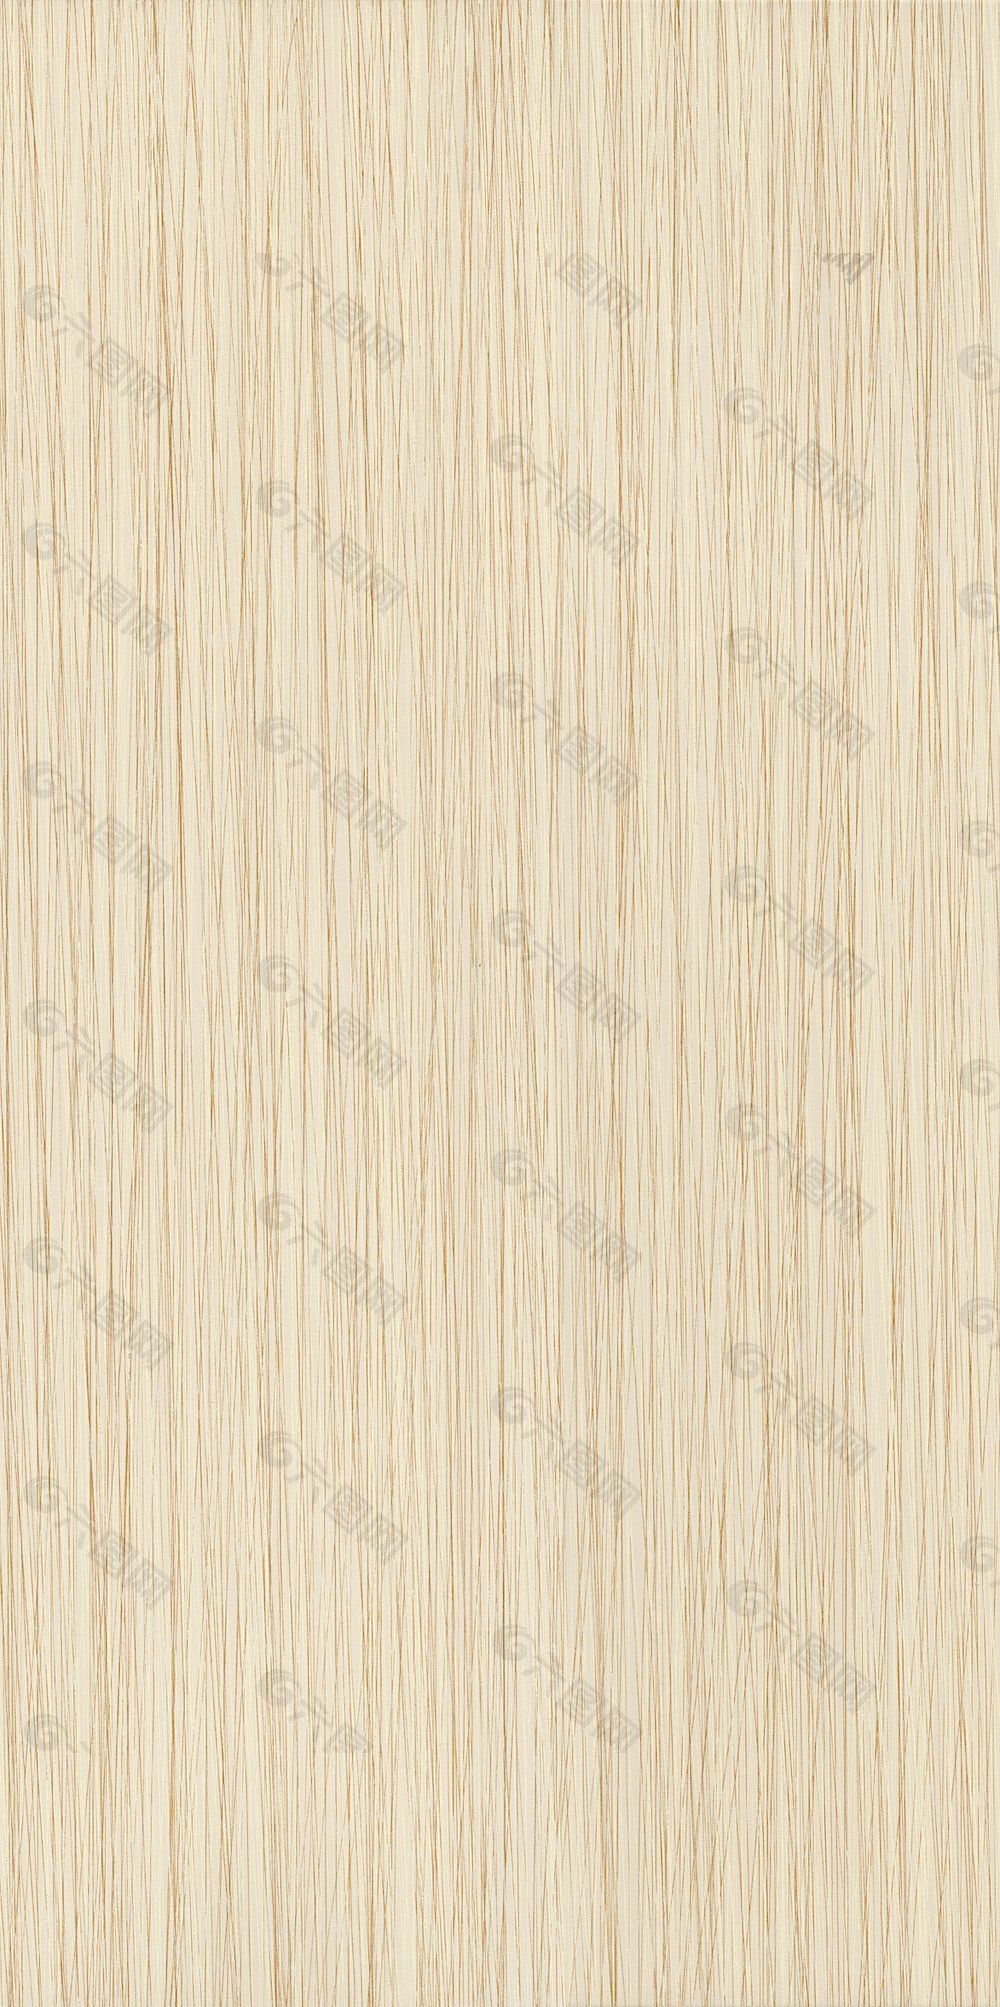 木材木纹木纹素材效果图3d素材 322